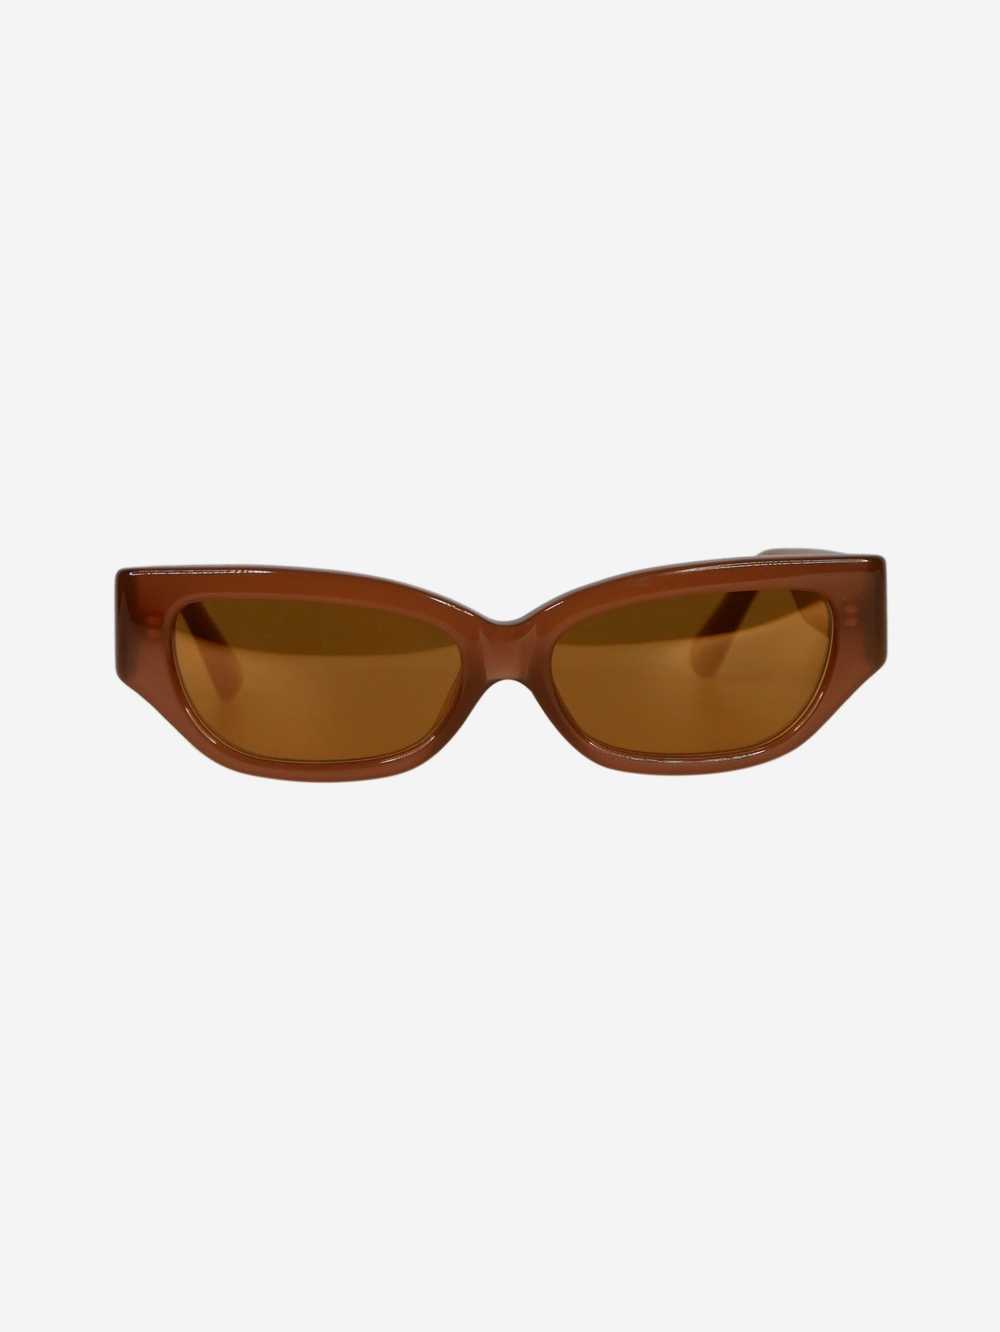 Linda Farrow Brown cat eye sunglasses - image 1